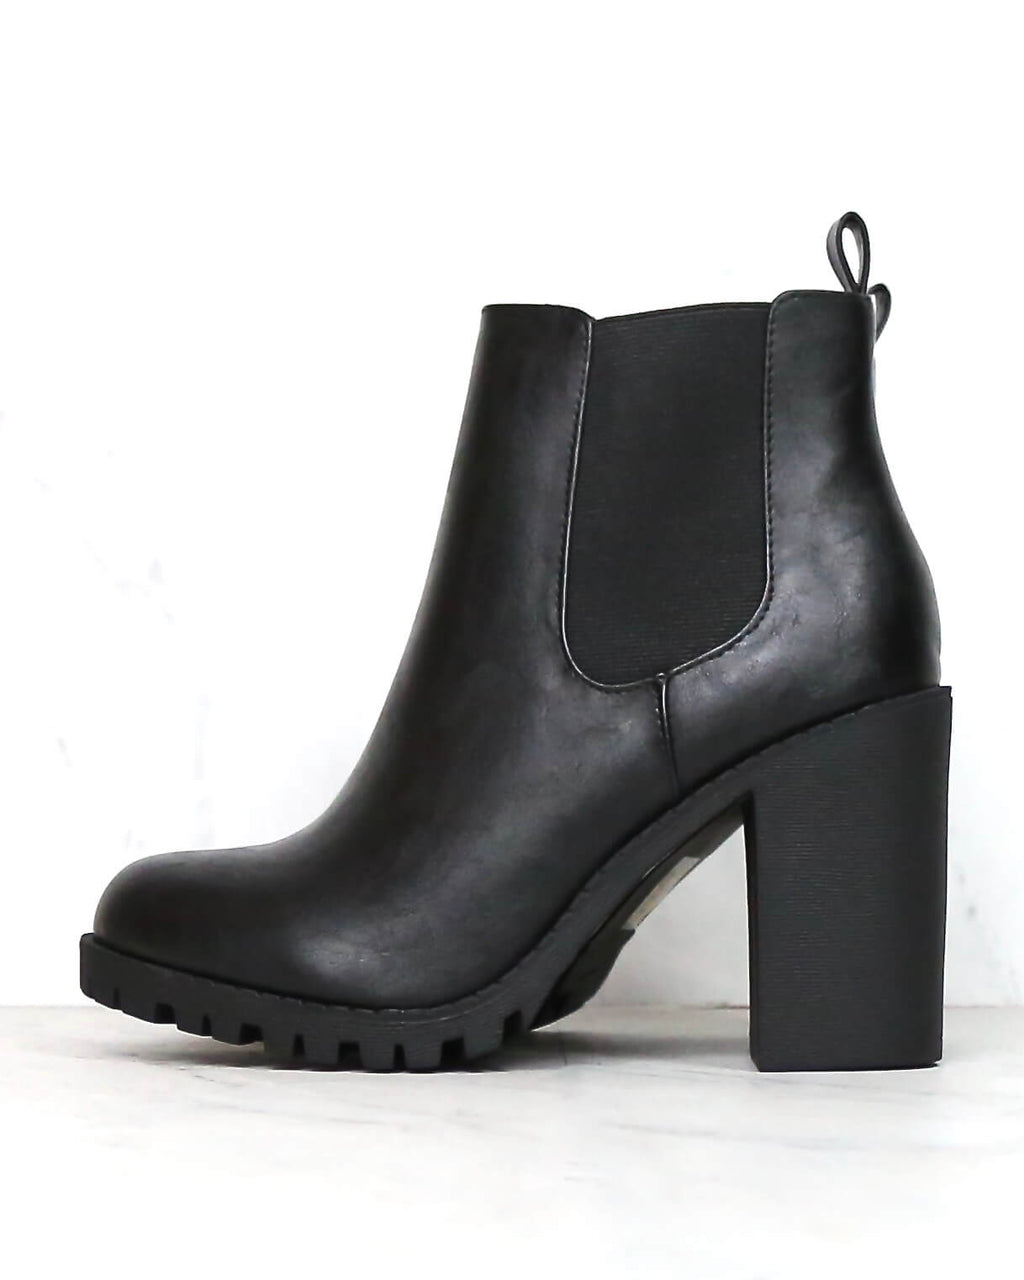 boots – shophearts